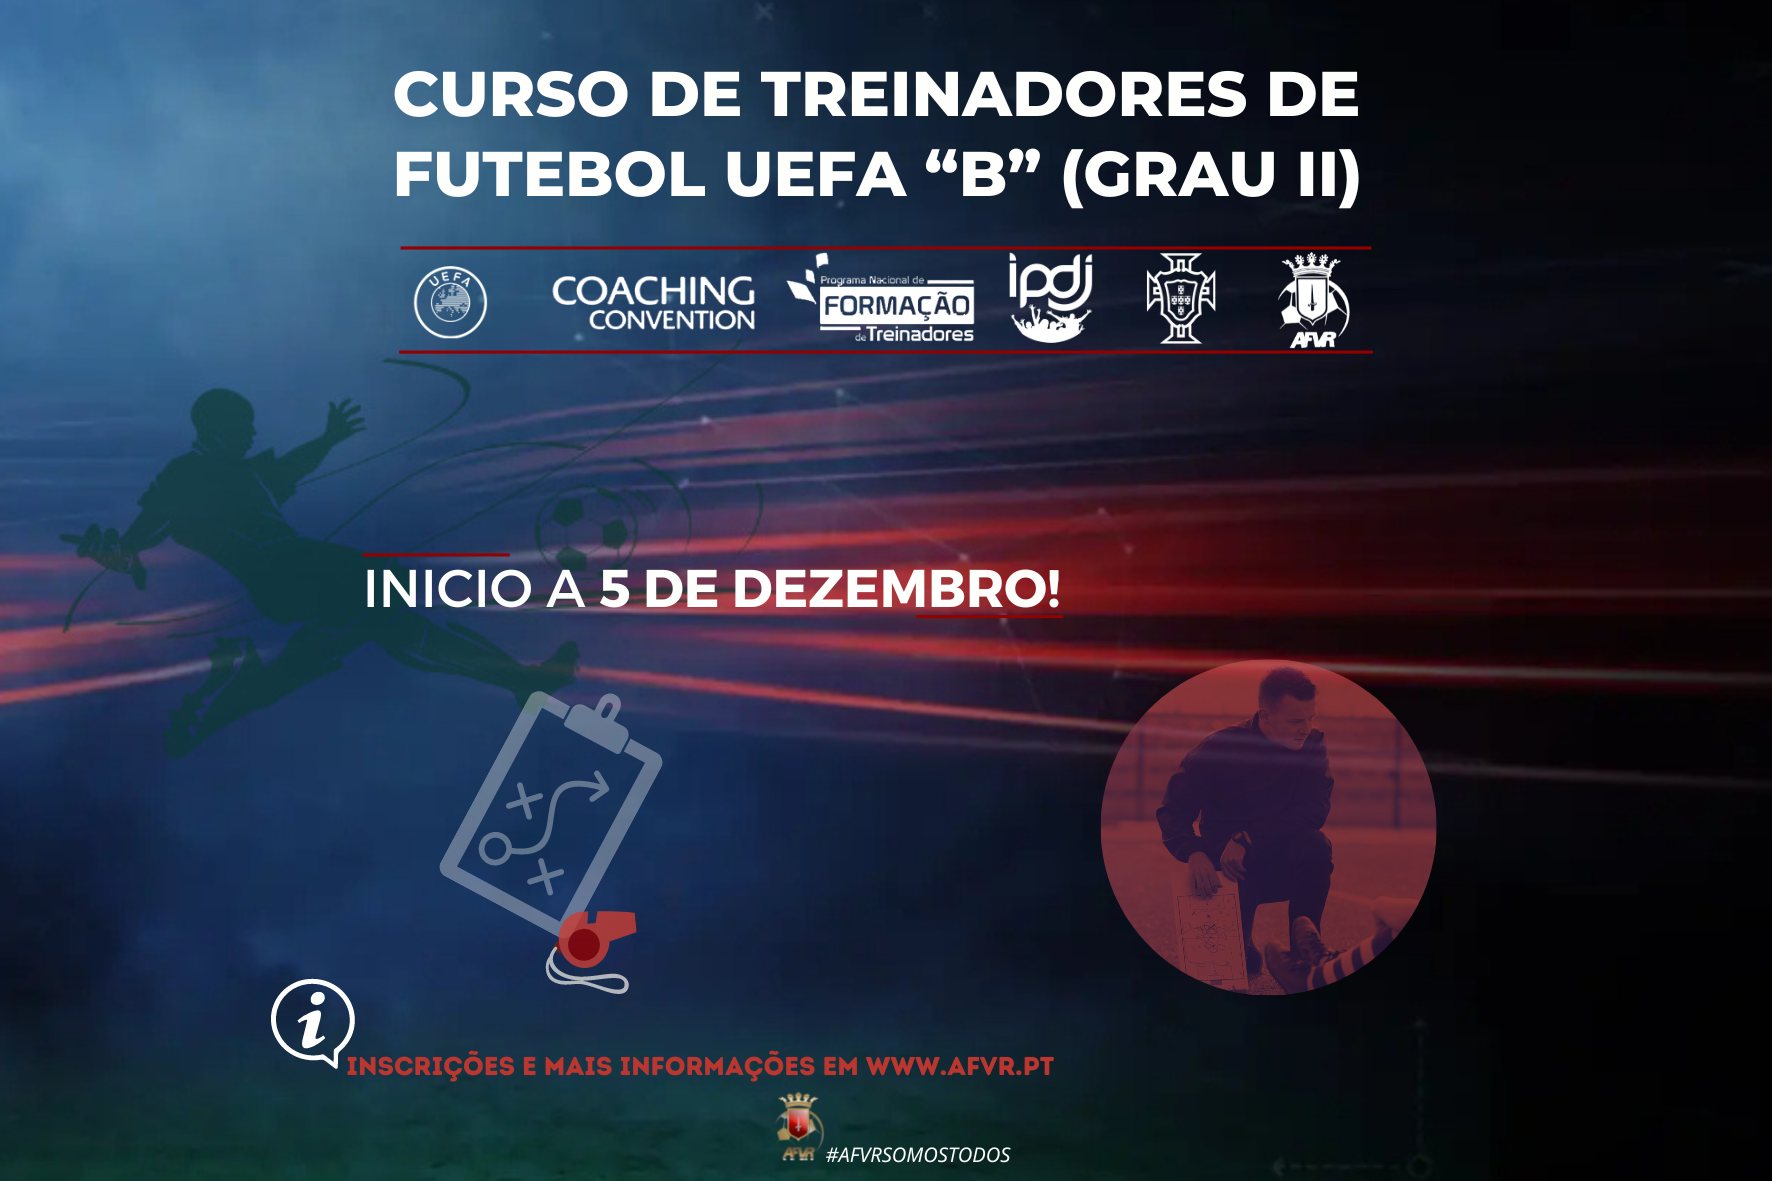 CURSO DE TREINADORES FUTEBOL UEFA “B” (Grau II)